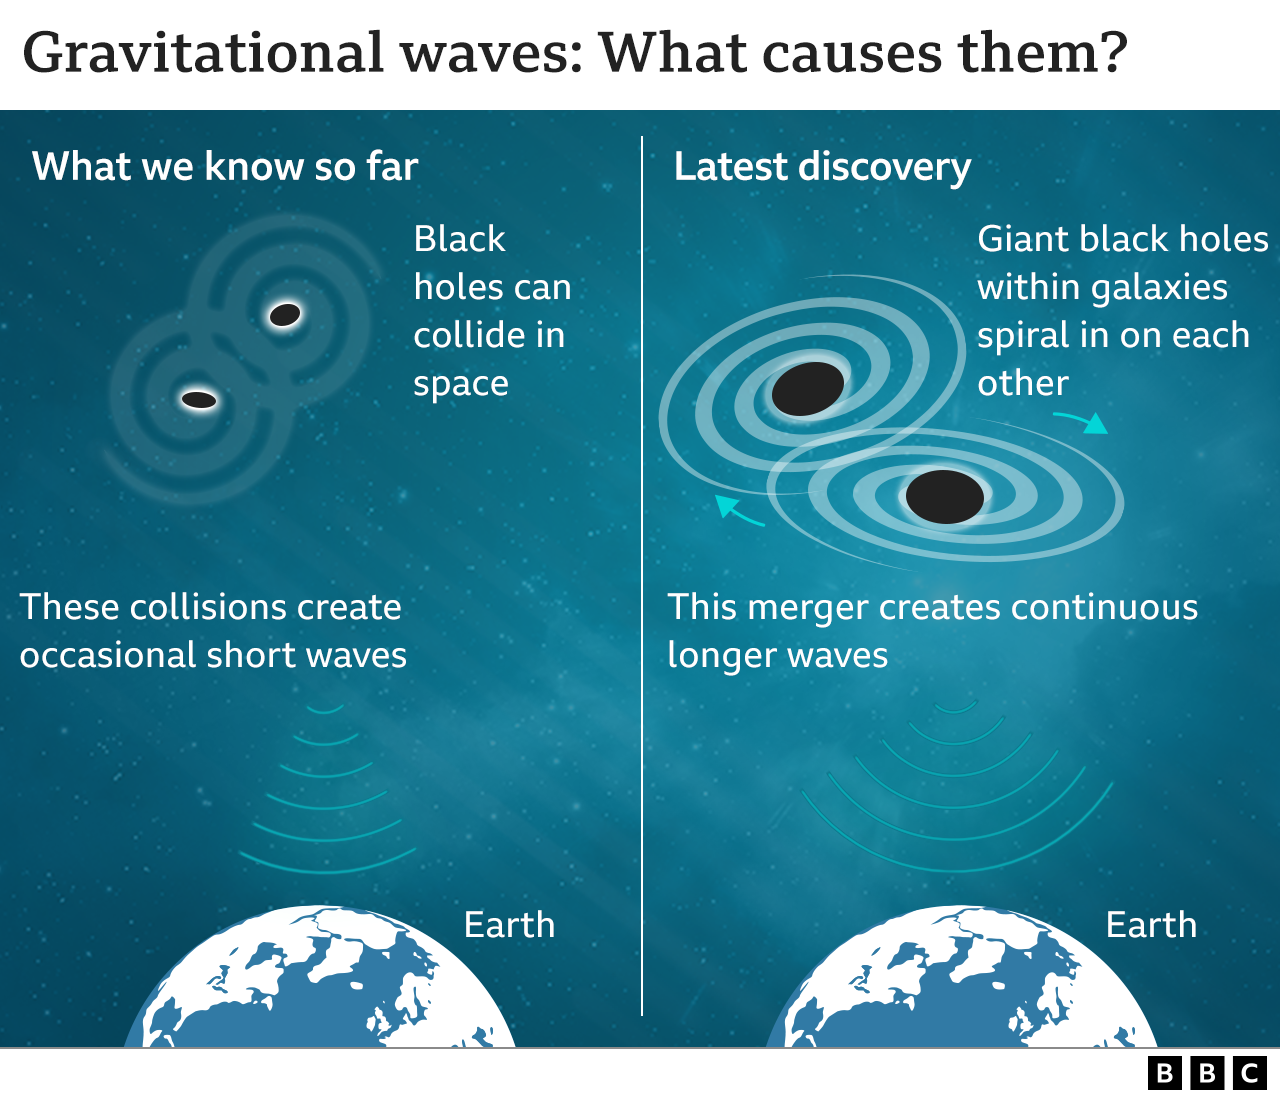 Grafik mit alten und neuen Gravitationswellen